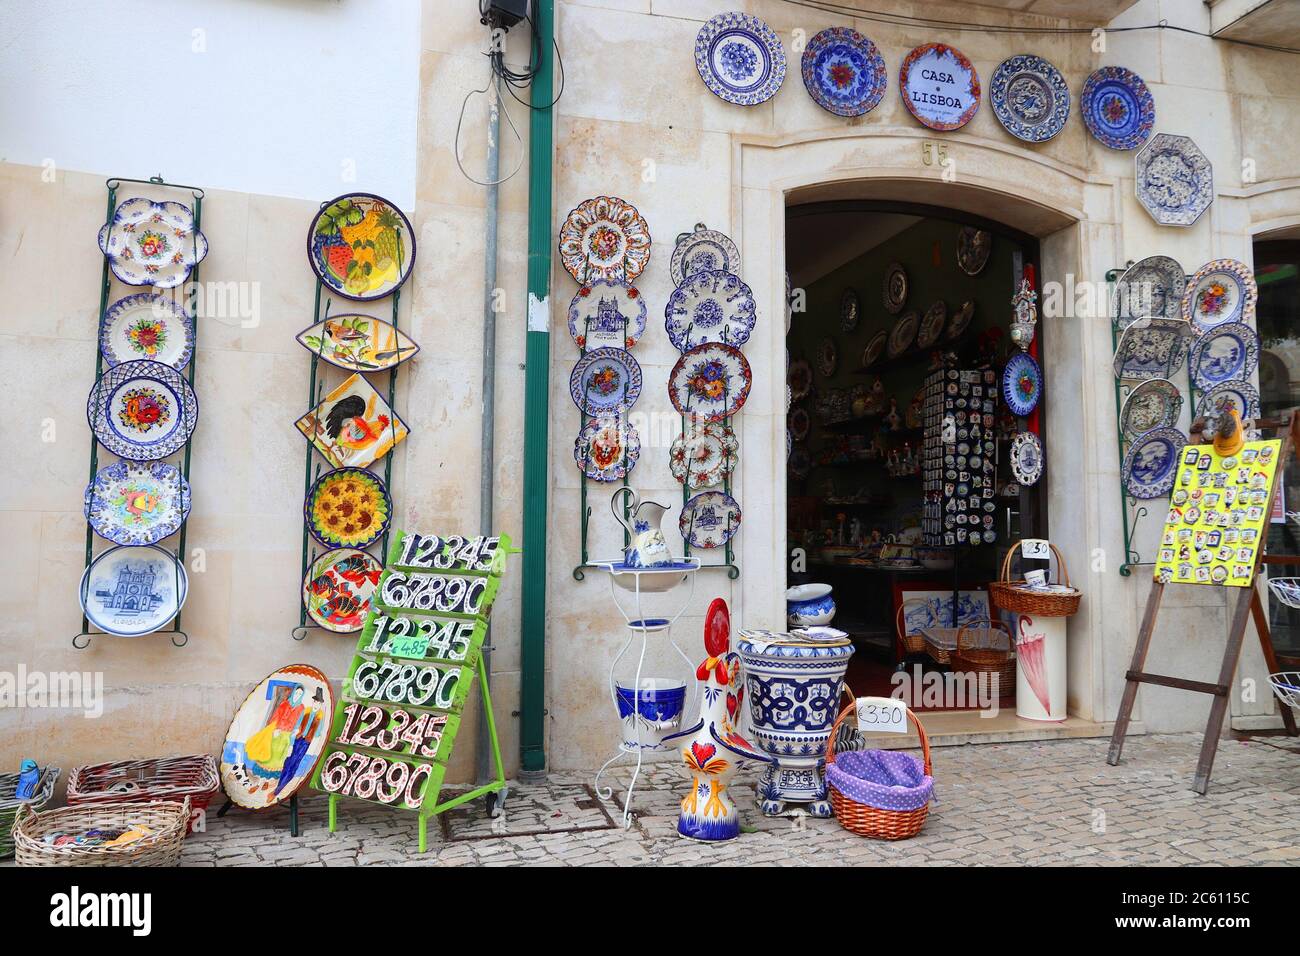 ALCOBACA, PORTOGALLO - 22 MAGGIO 2018: Piatti artigianali in ceramica in un negozio di souvenir ad Alcobaca. 21.2 milioni di turisti hanno visitato il Portogallo nel 201 Foto Stock